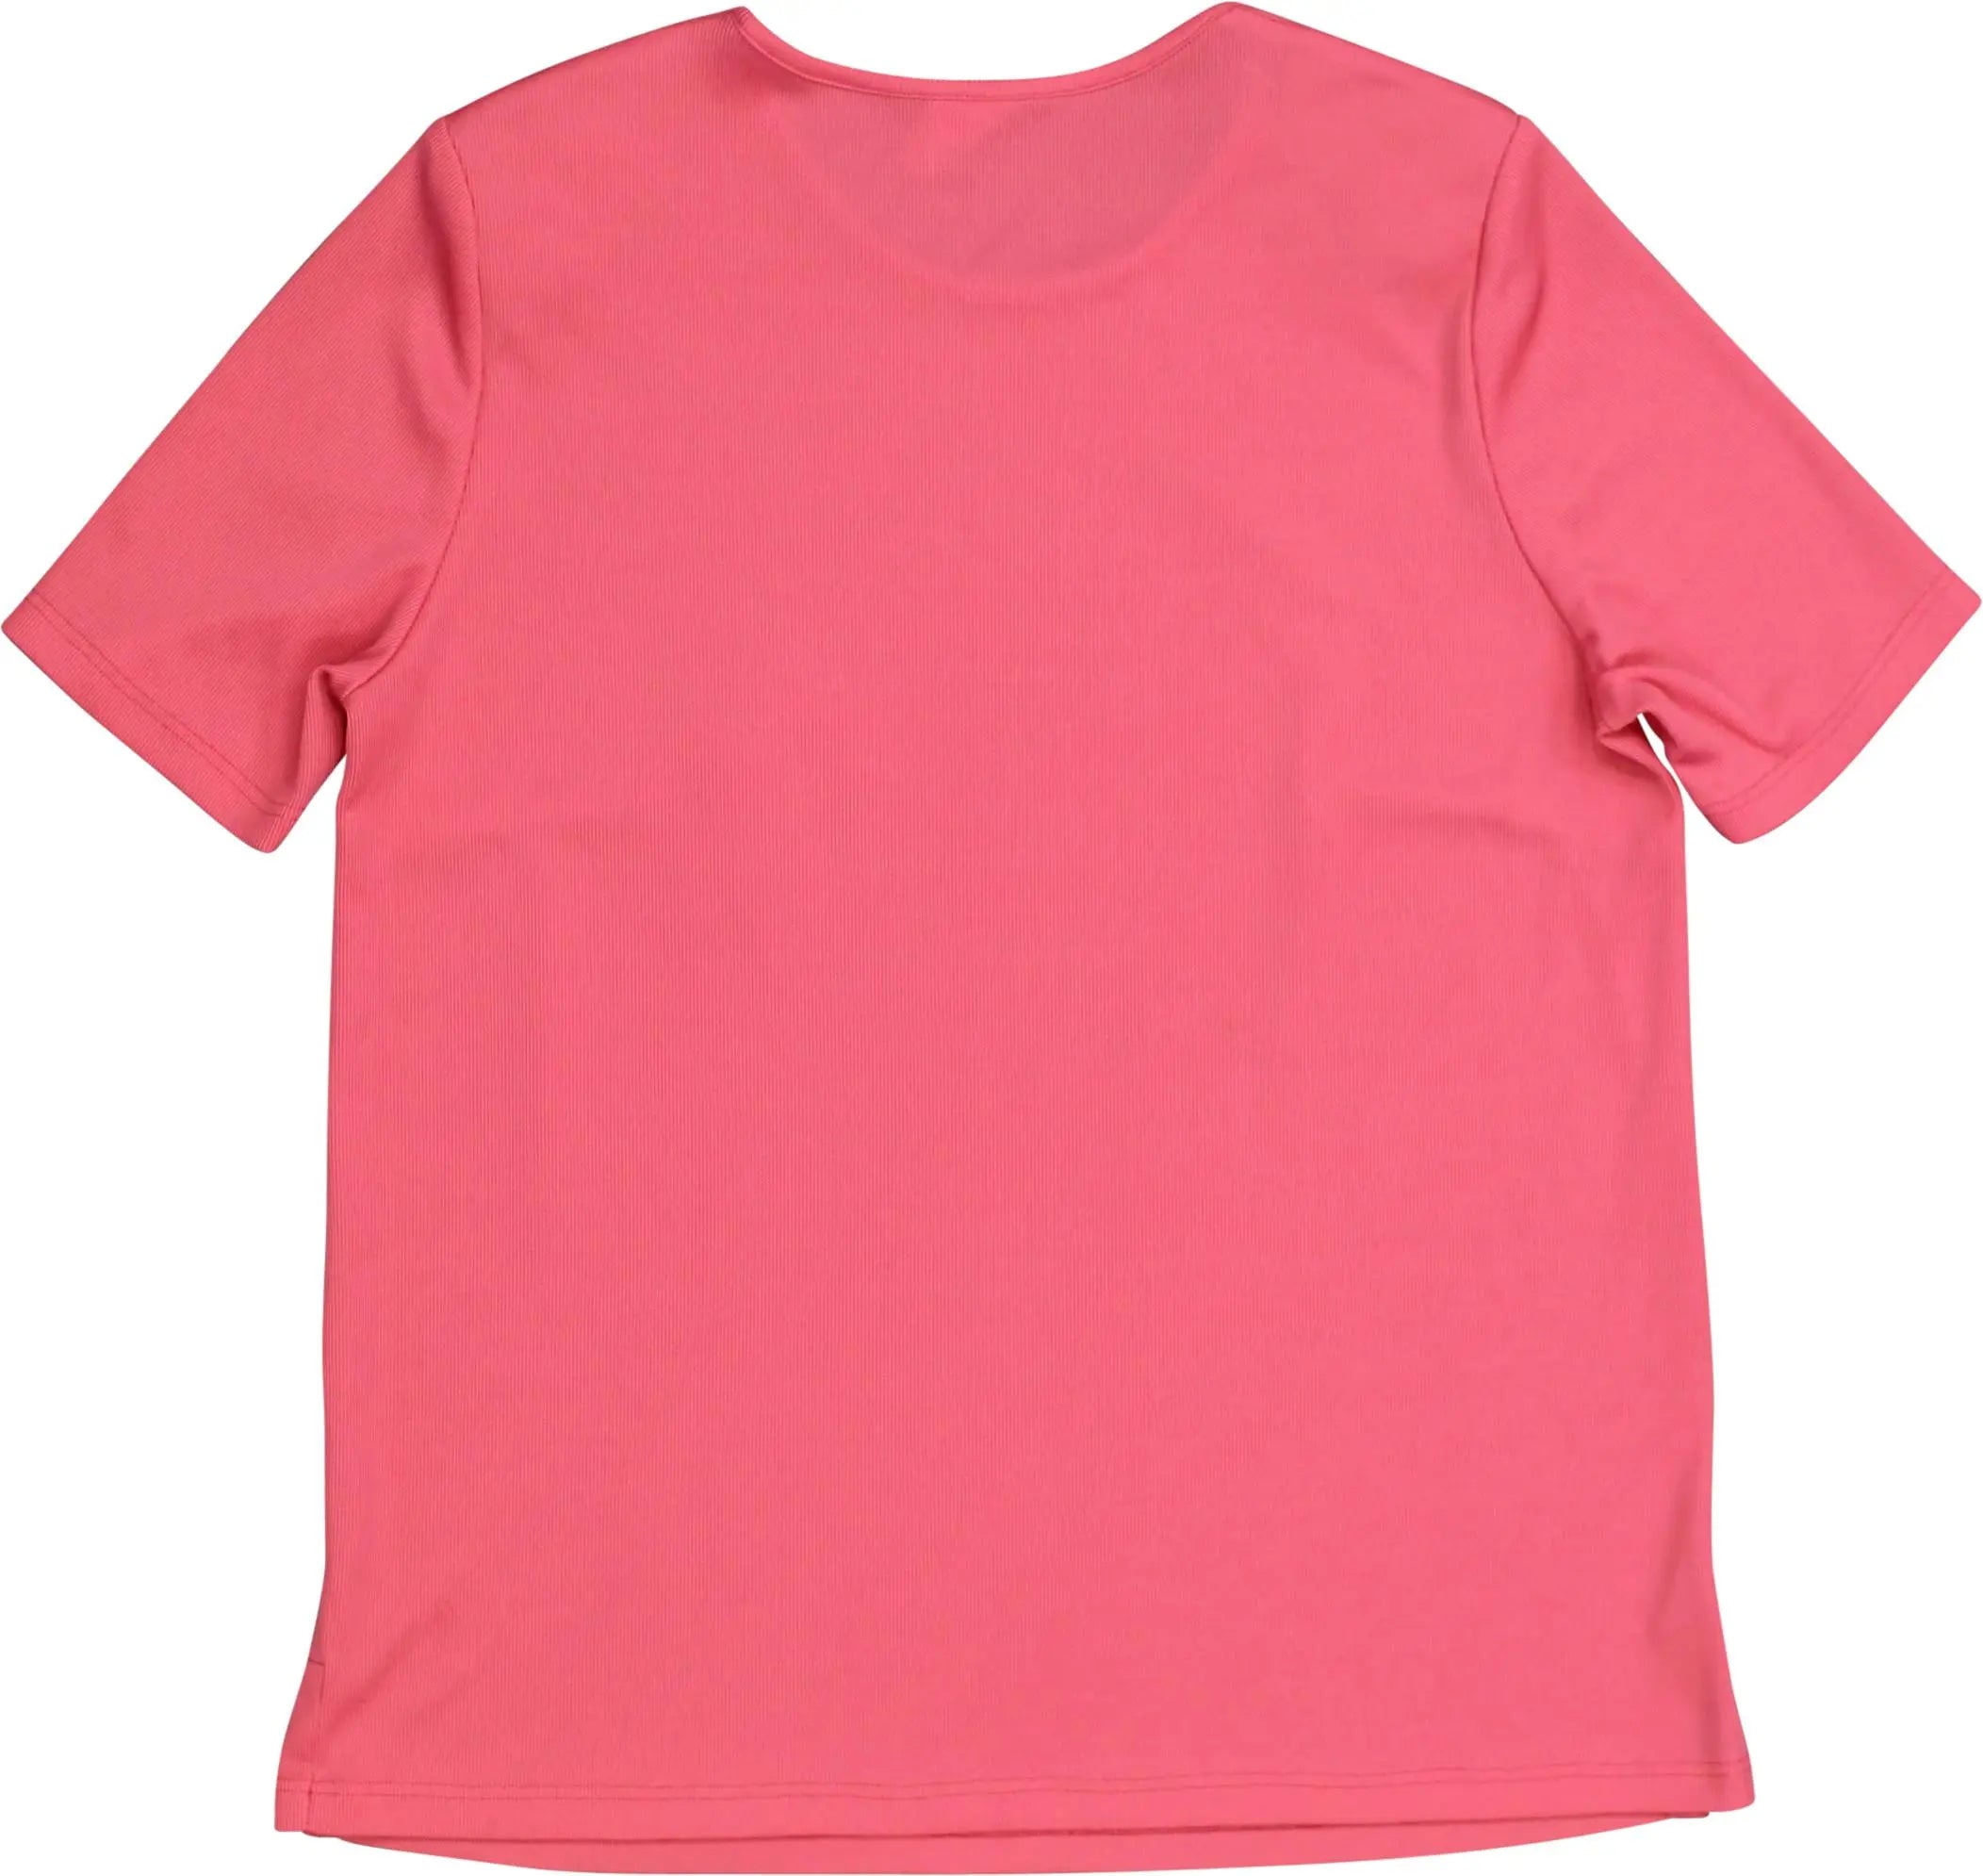 Frankenwälder - Pink T-shirt with Shoulder Pads- ThriftTale.com - Vintage and second handclothing